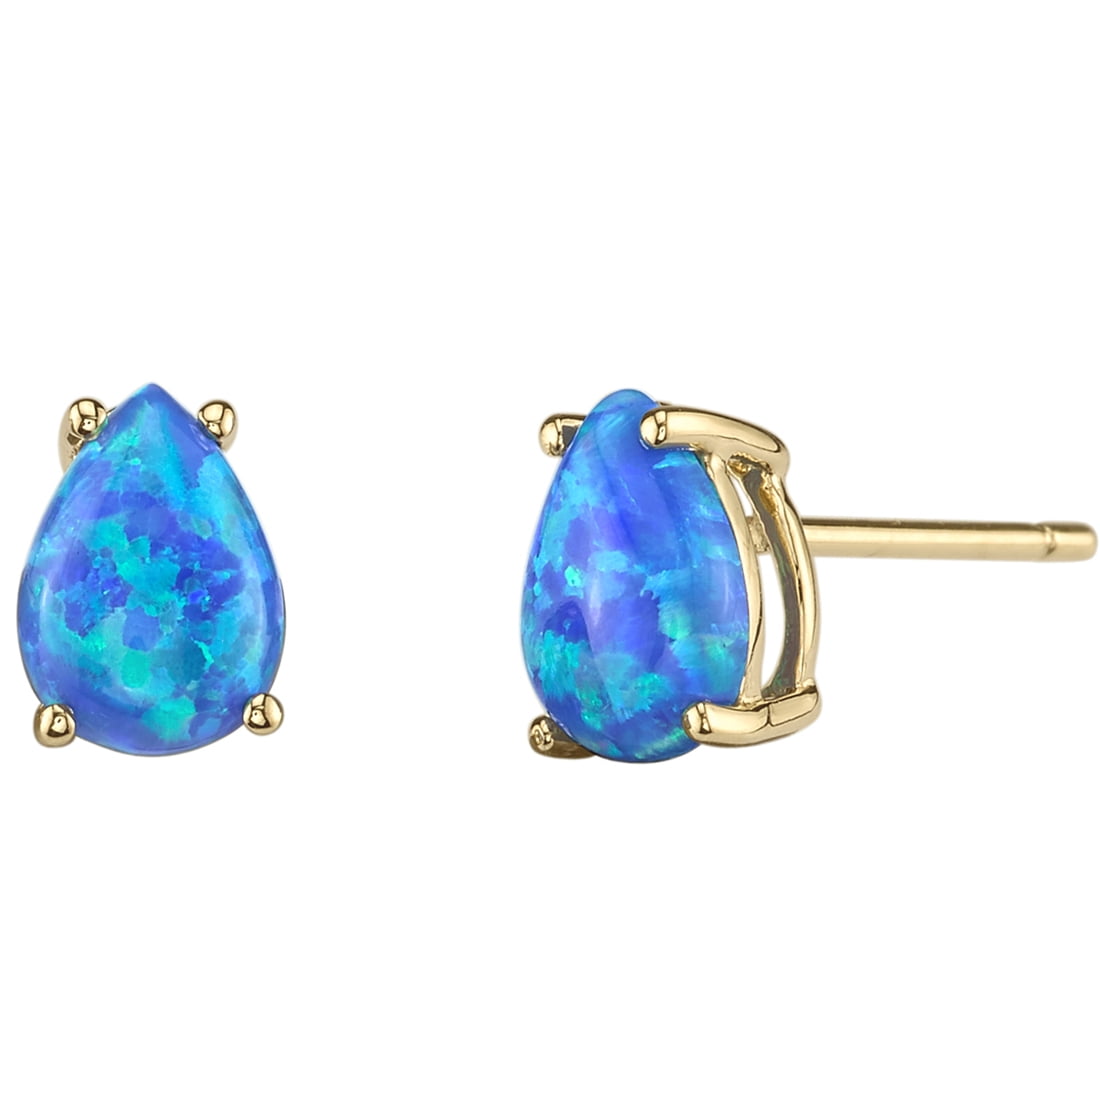 1 ct Pear Shape Created Blue Opal Stud Earrings in 14K Yellow Gold ...